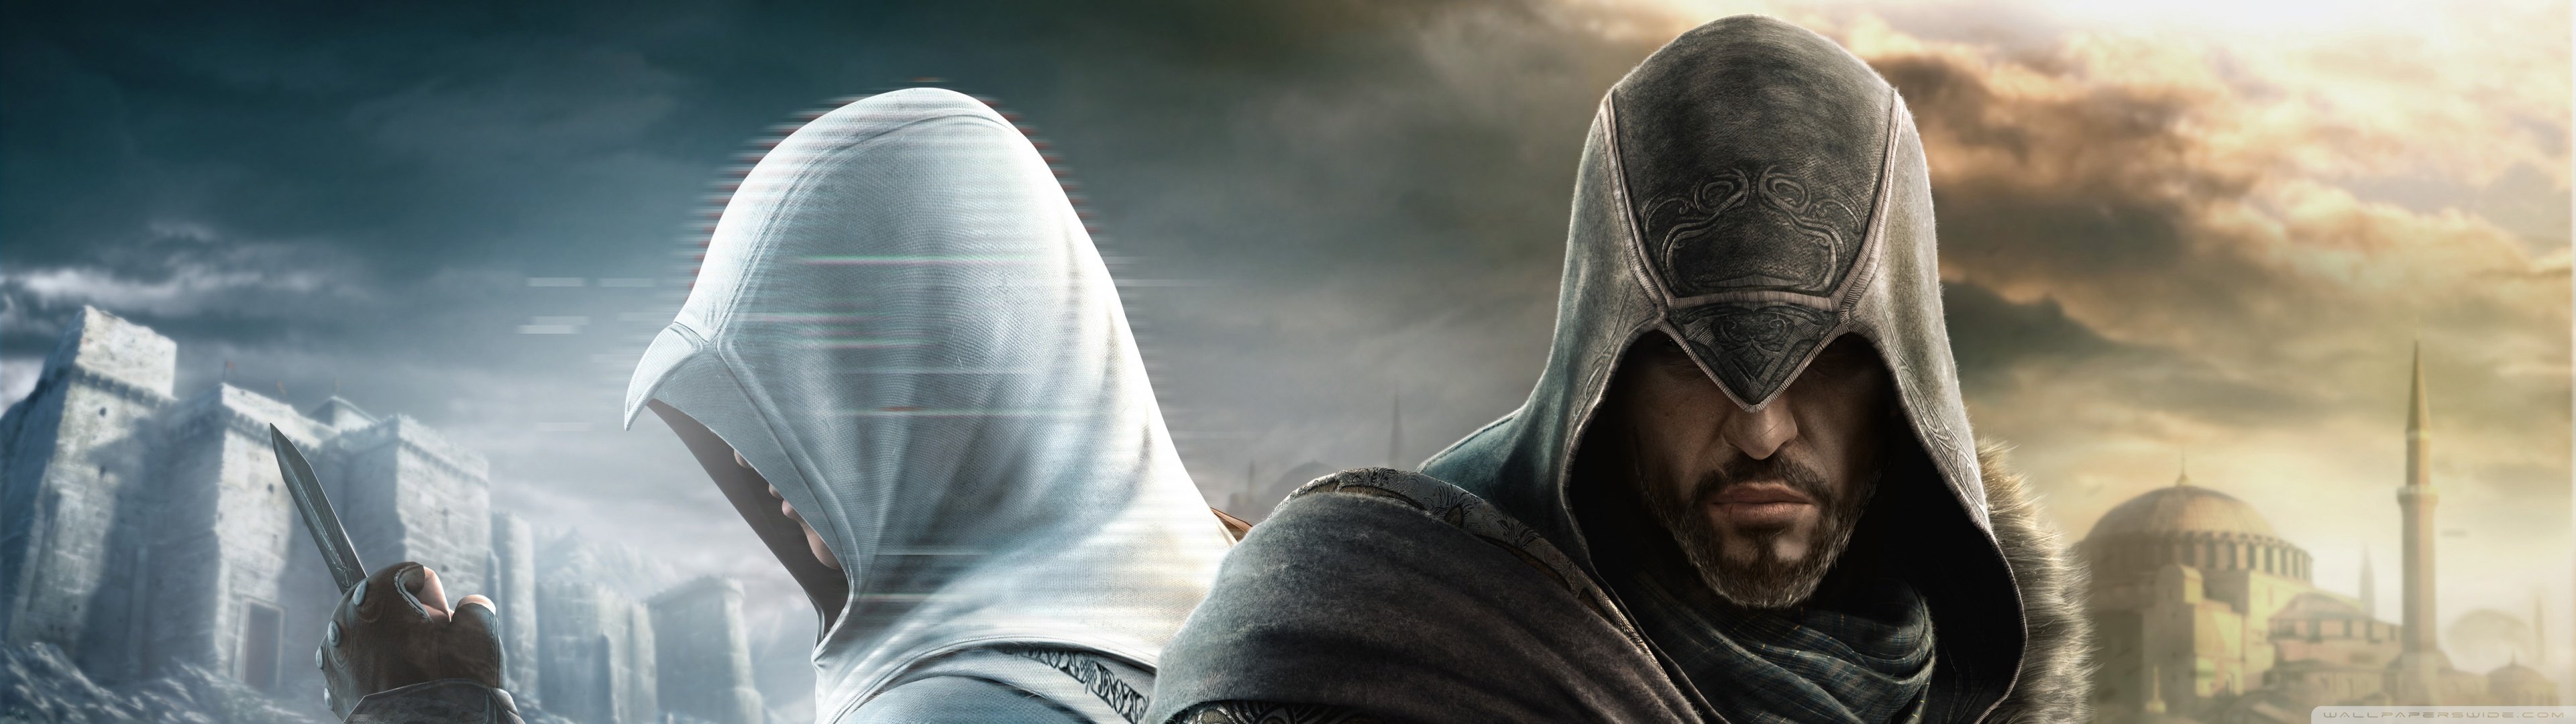 assassins, Creed, Multiscreen Wallpaper